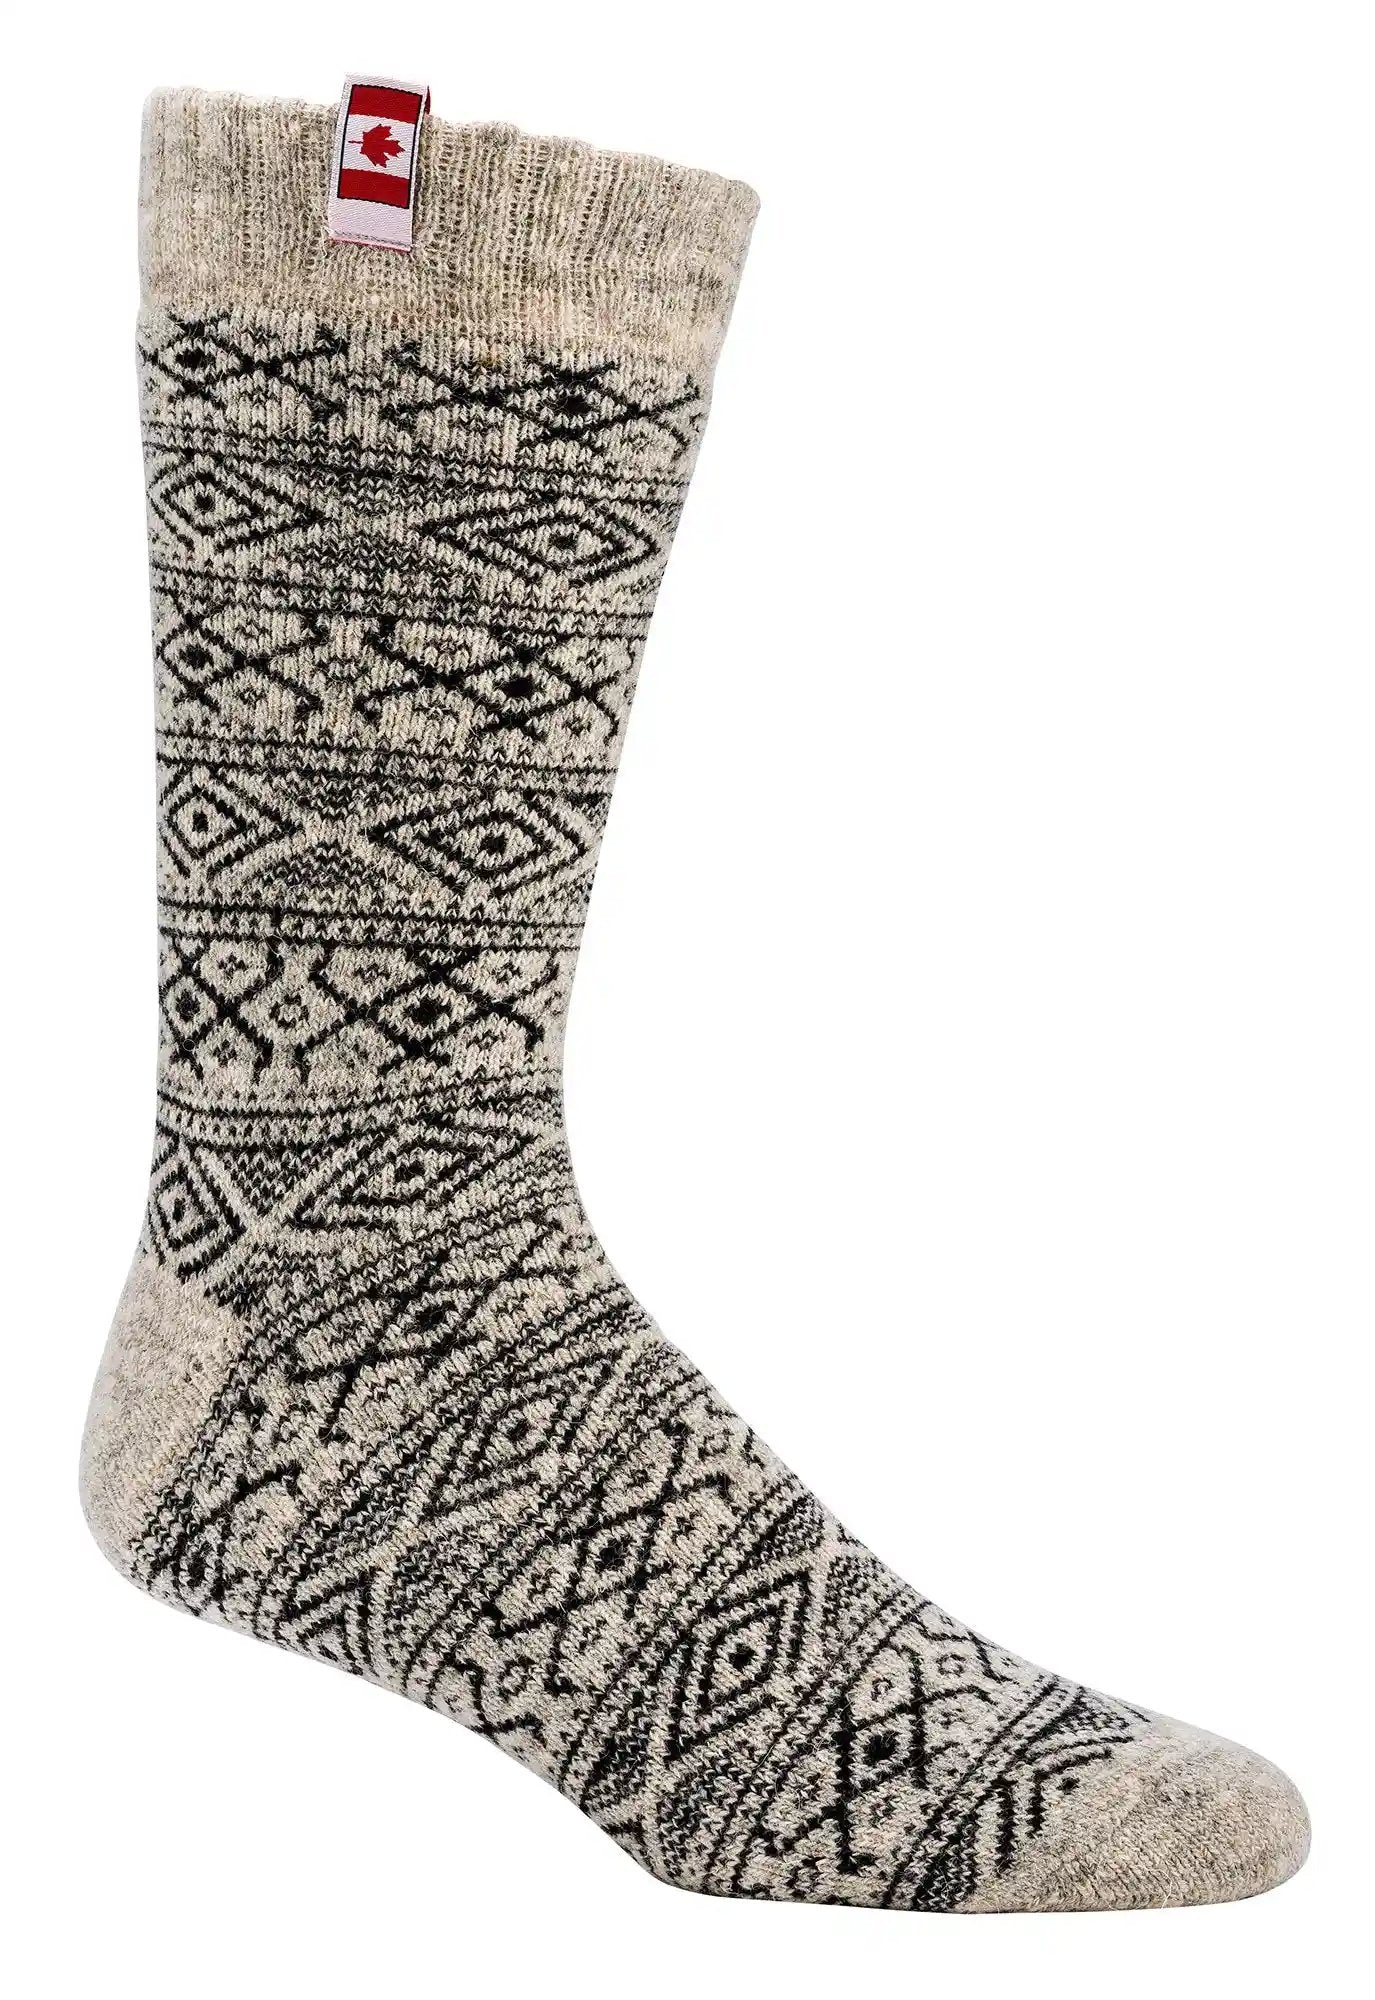 THERMO Calcetines noruegos calcetines de lana mujer hombre niño